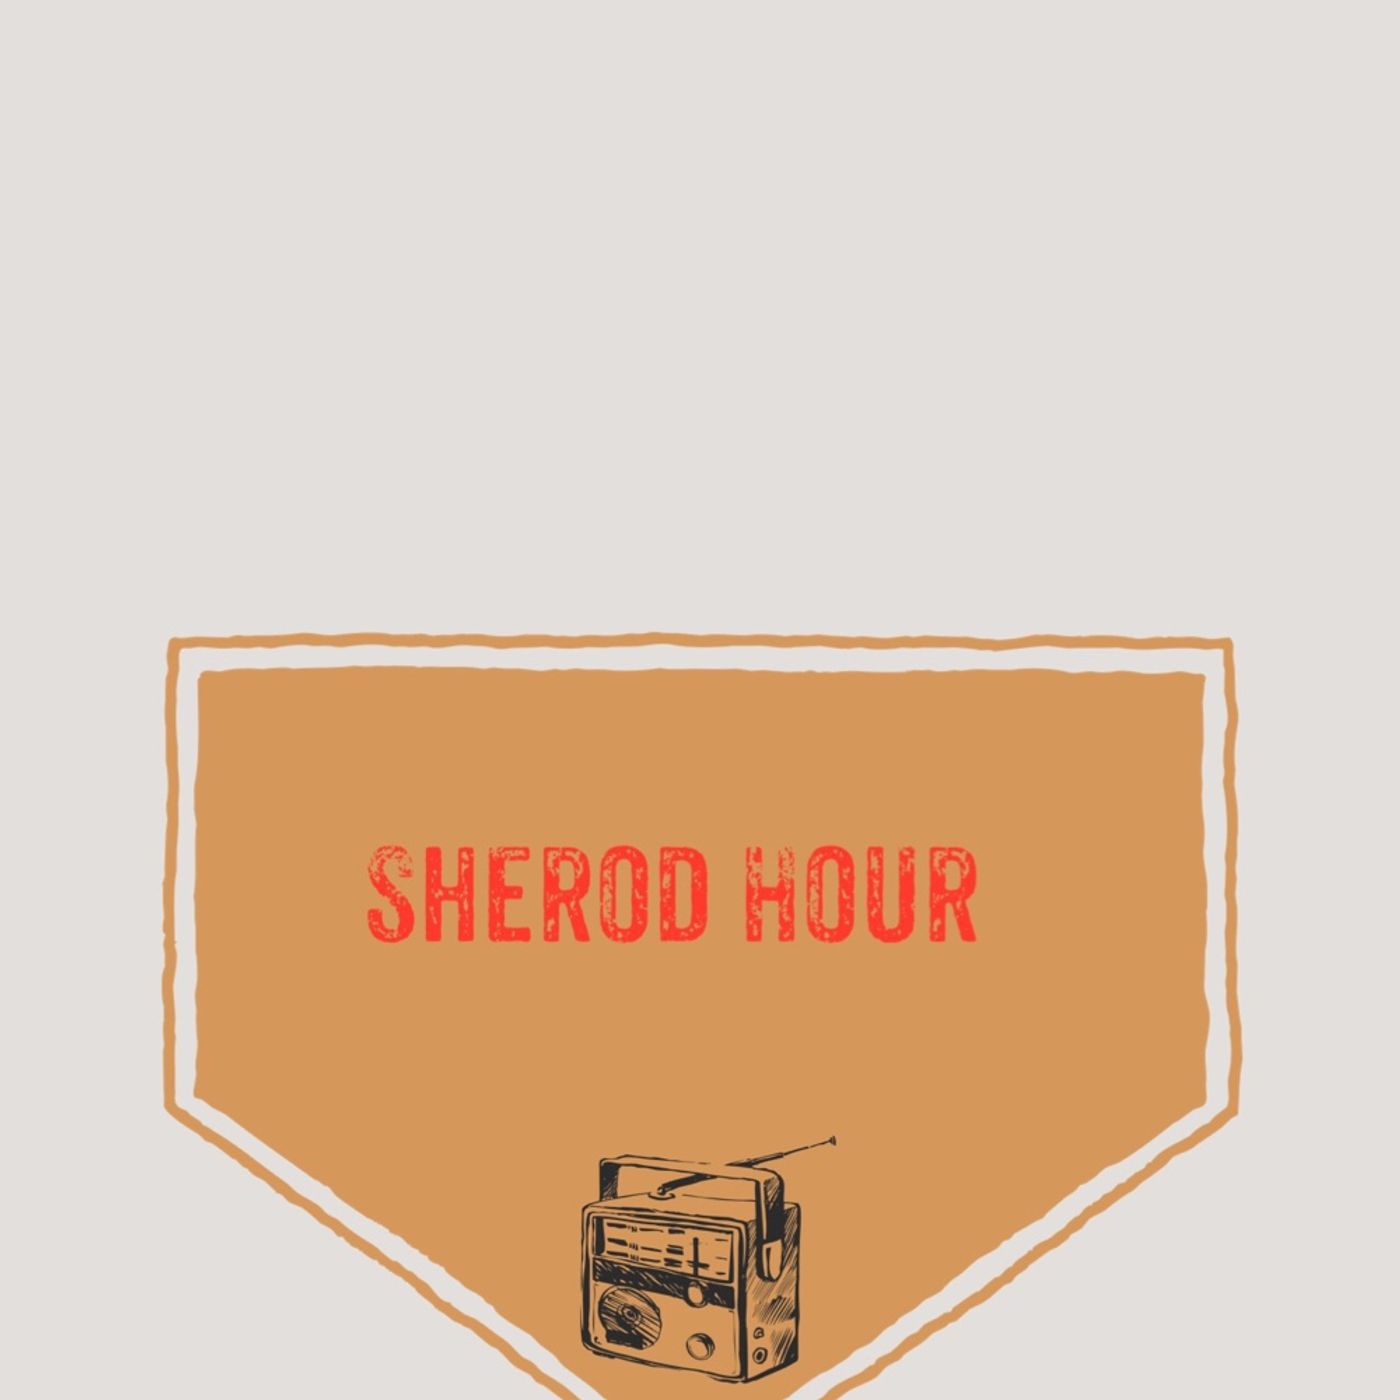 Sherod Hour